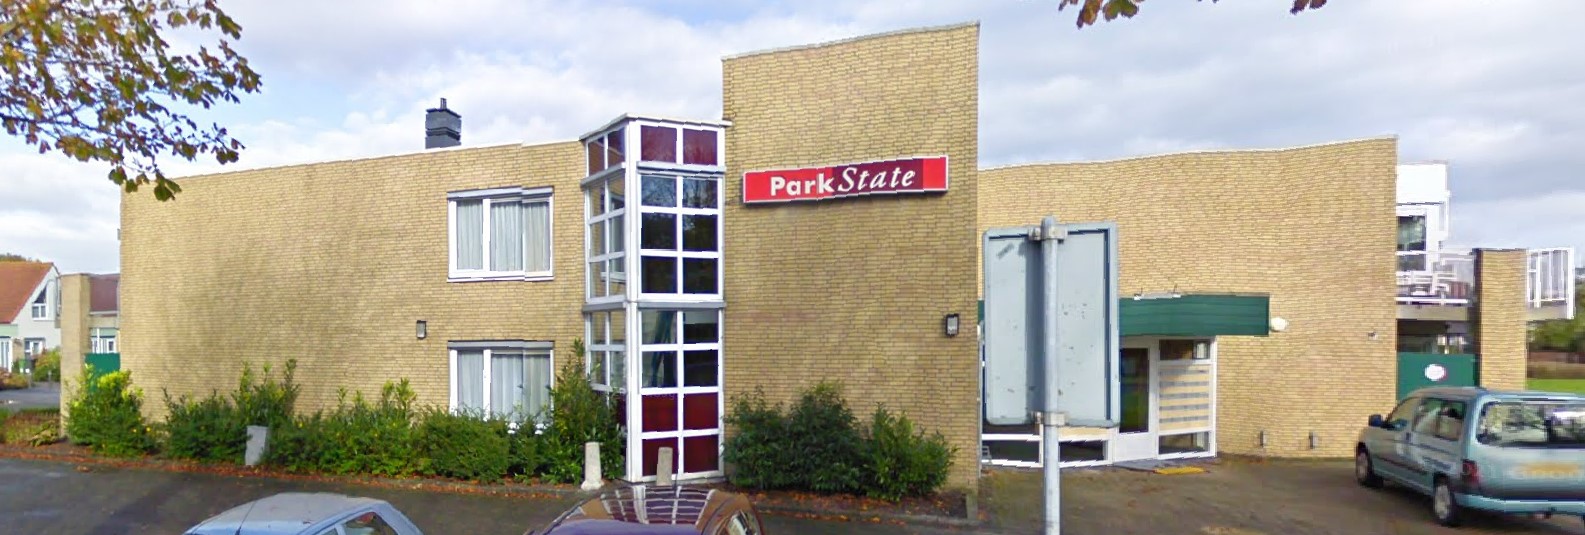 Parkstate 7, 8801 HT Franeker, Nederland